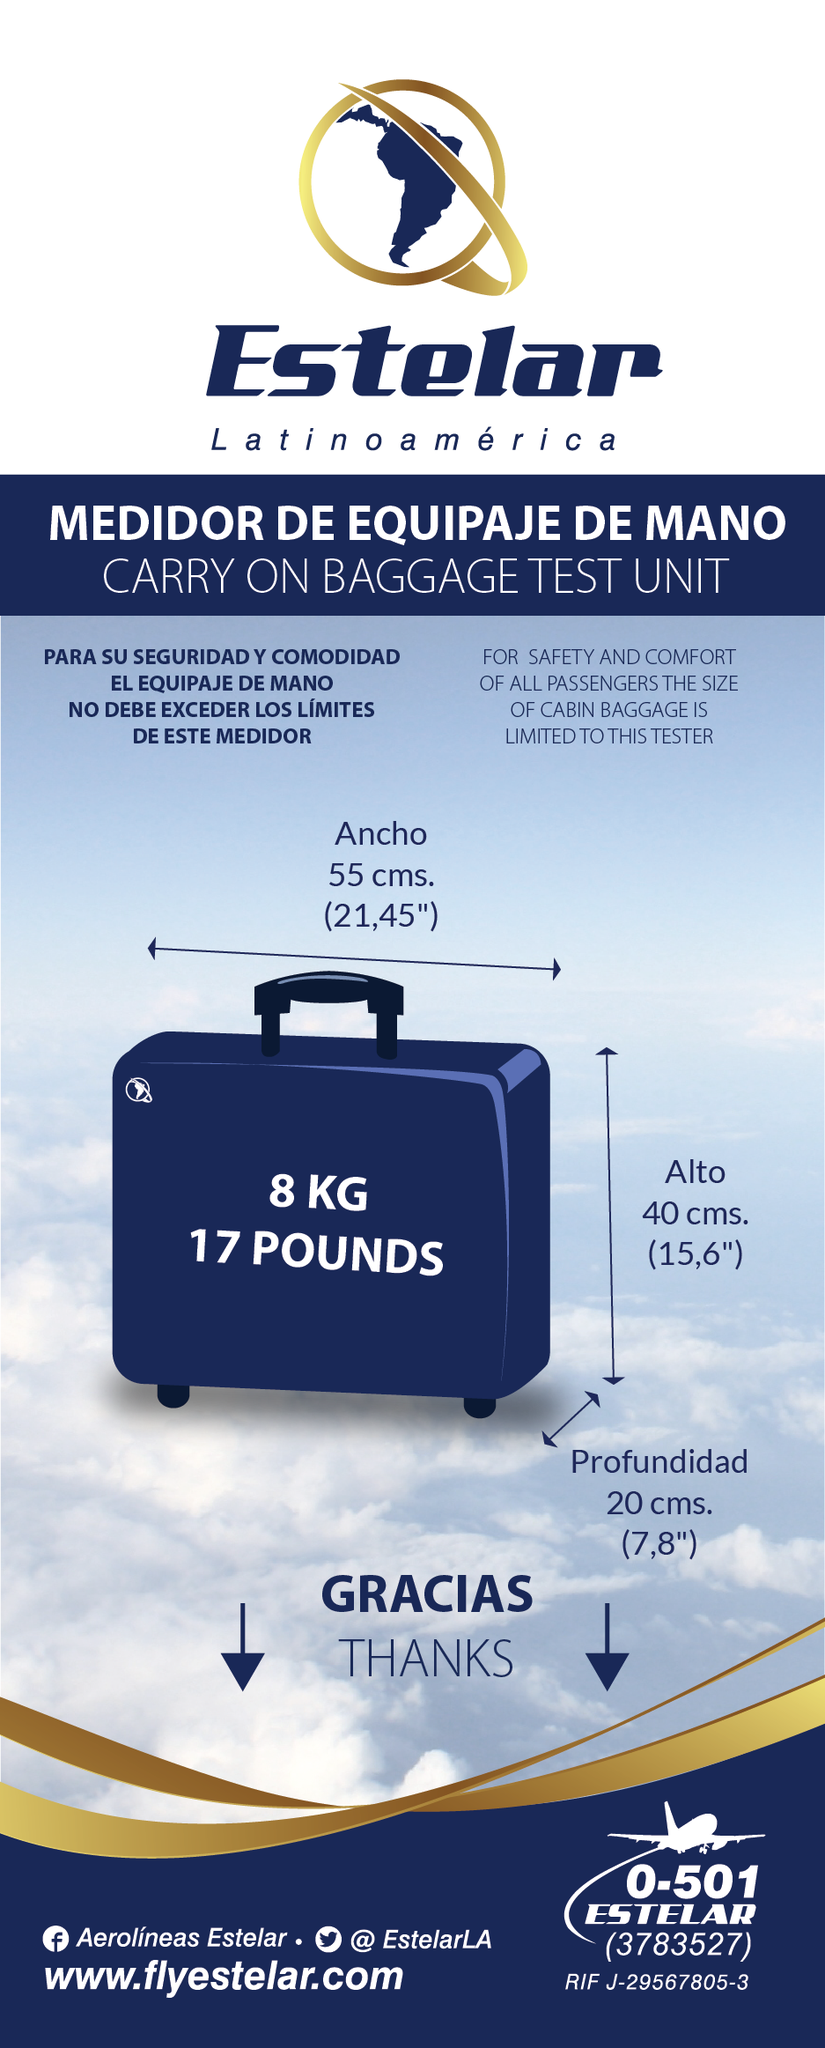 Aerolíneas Estelar on Twitter: "Estimado cliente el peso de su equipaje facturado es de 23 kilos y 8 kilos equipaje de mano. / Twitter